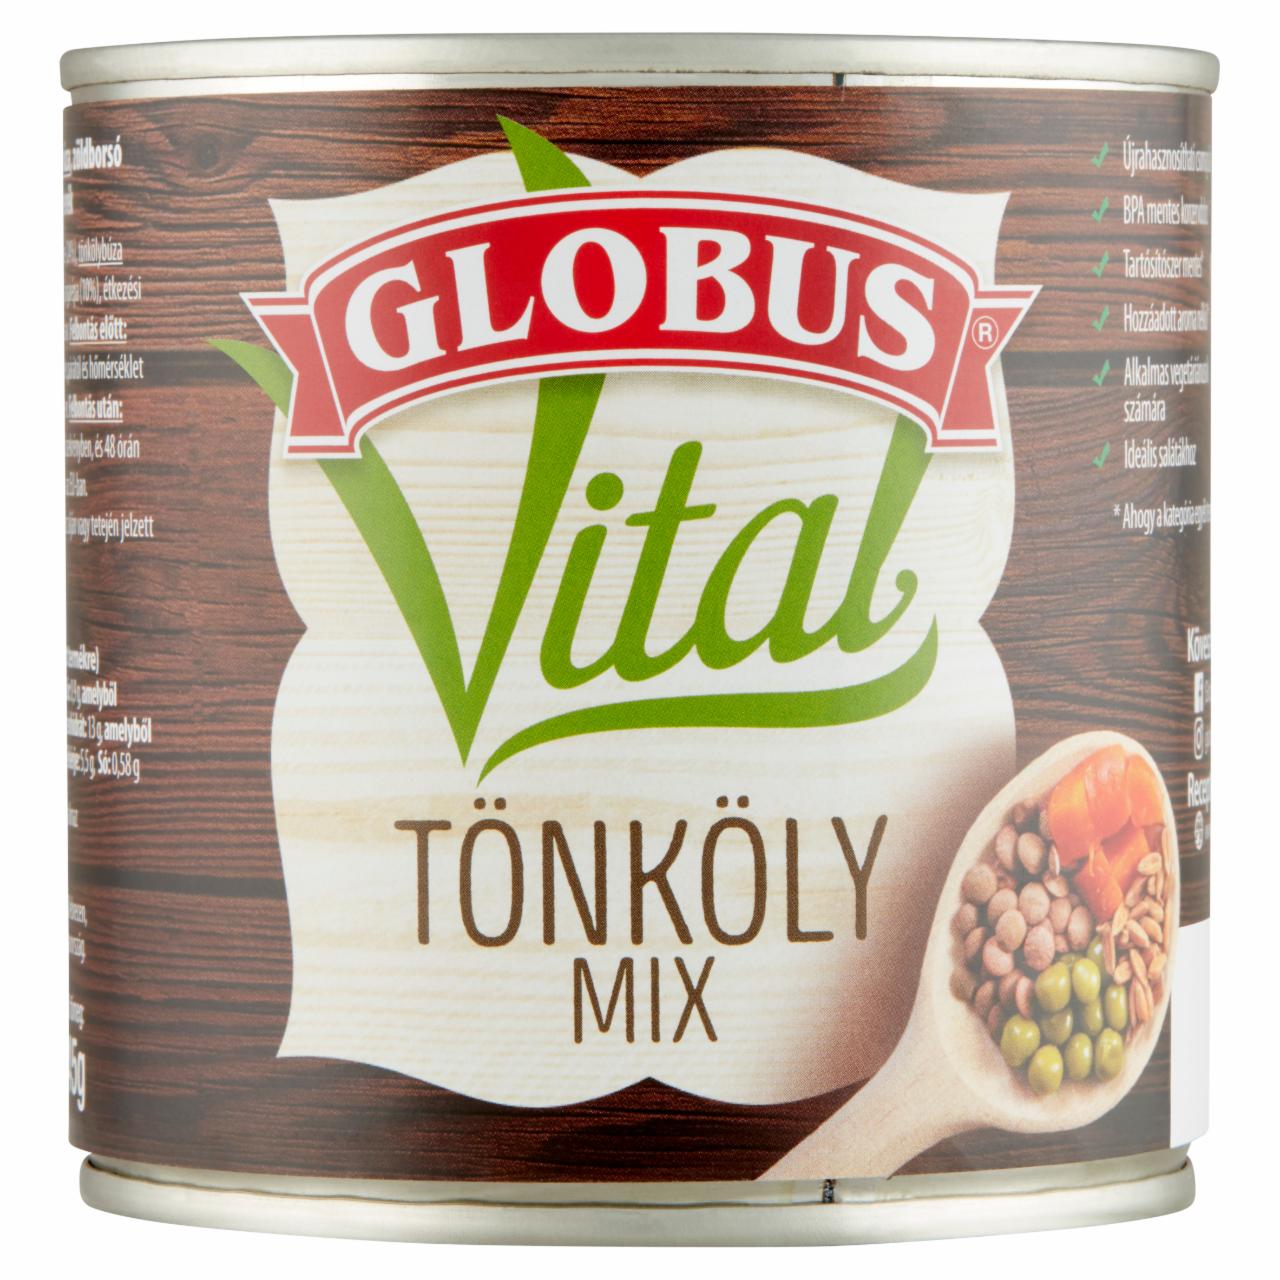 Képek - Globus Vital tönköly mix 400 g